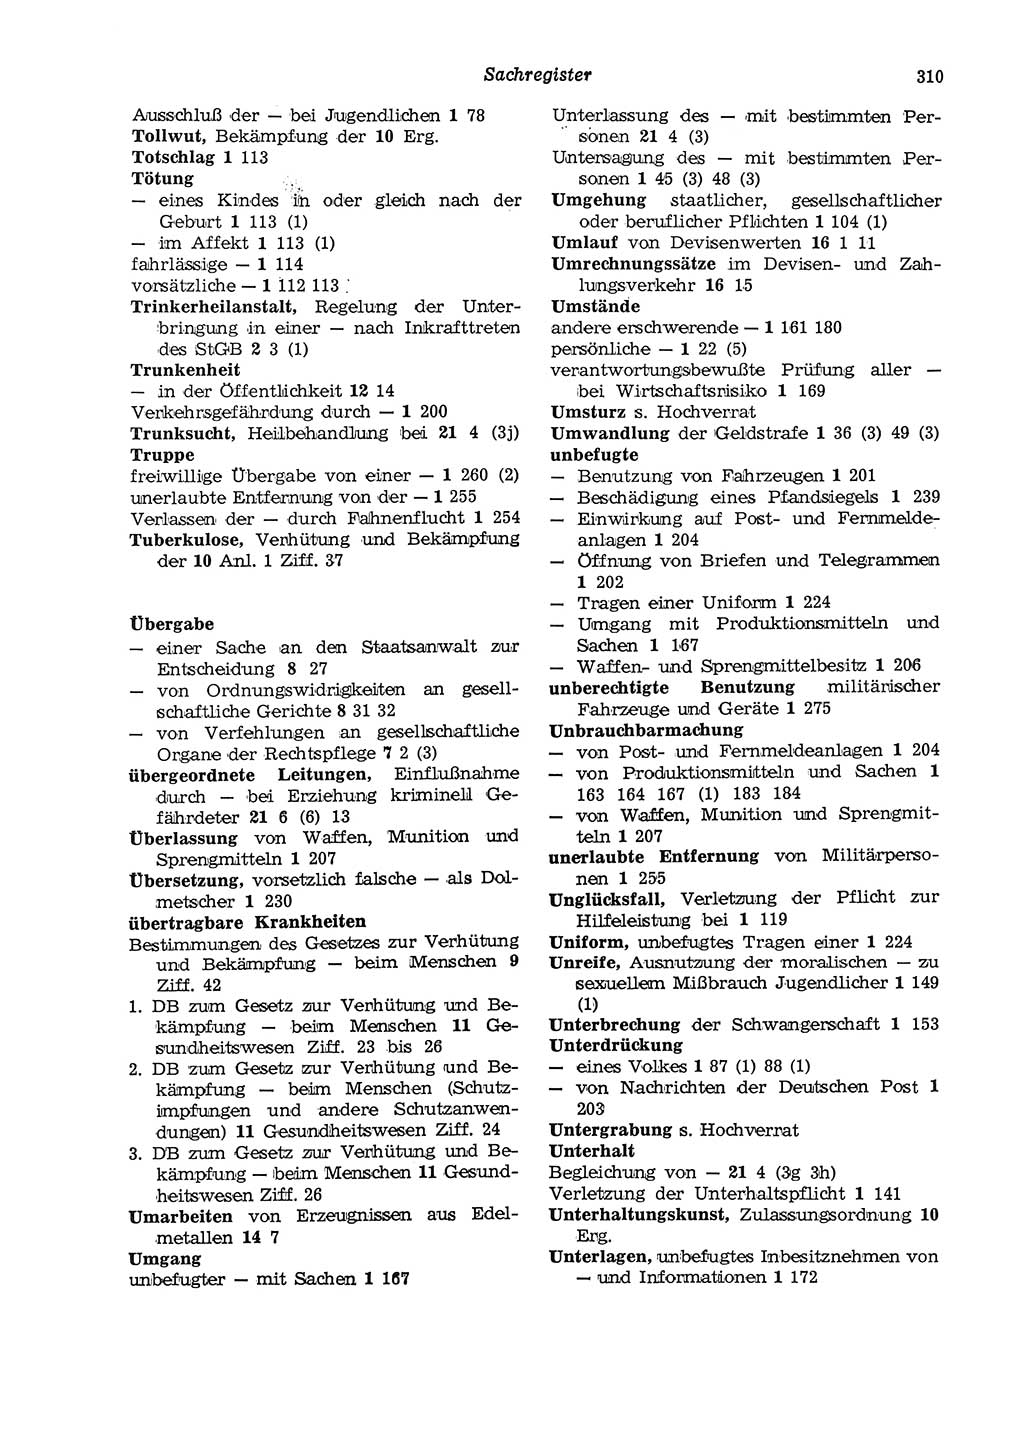 Strafgesetzbuch (StGB) der Deutschen Demokratischen Republik (DDR) und angrenzende Gesetze und Bestimmungen 1975, Seite 310 (StGB DDR Ges. Best. 1975, S. 310)